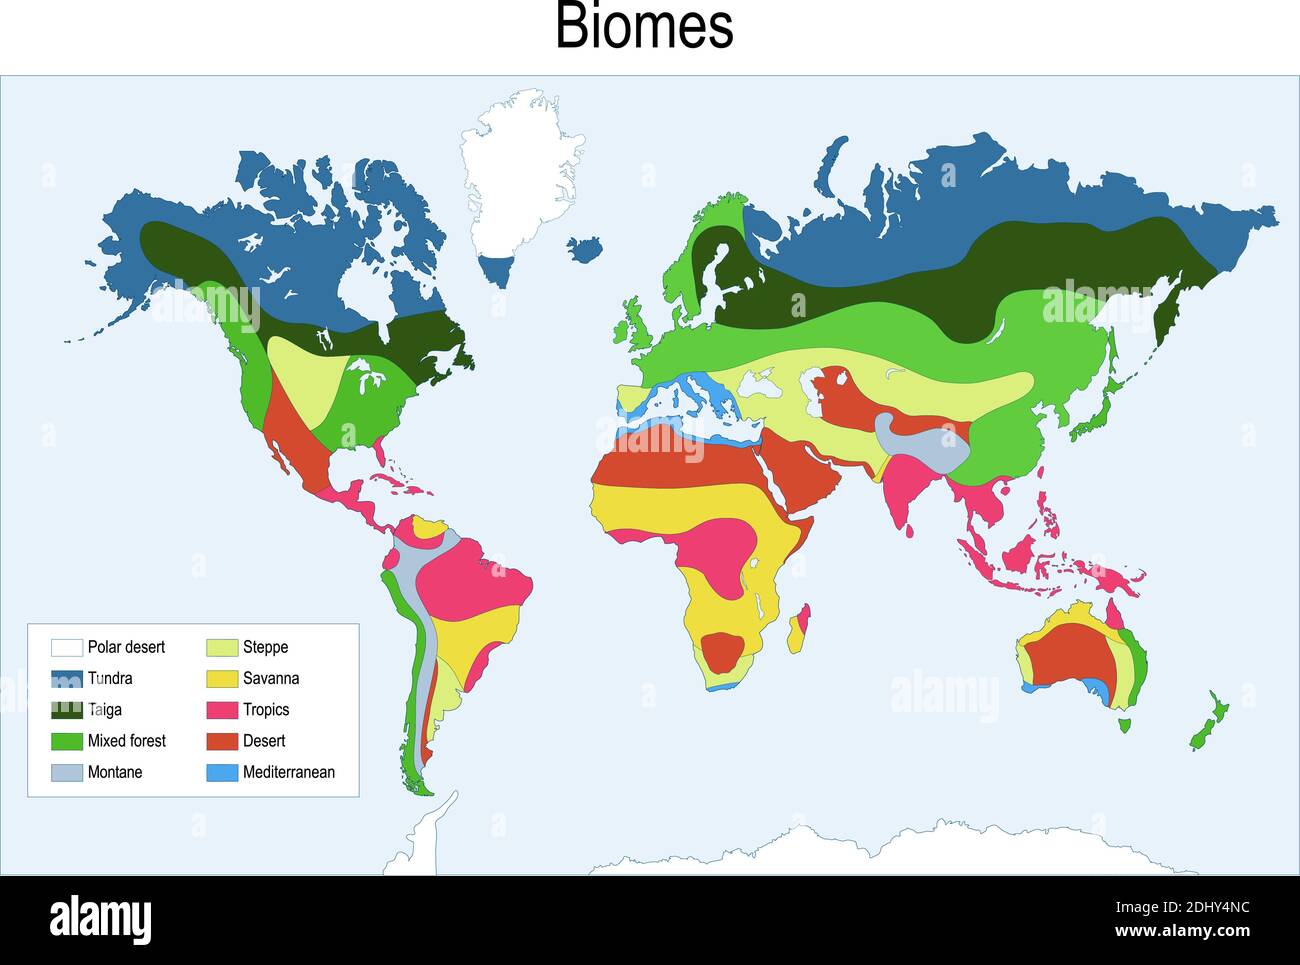 biomes. Mappa a colori dei principali biomi del mondo. Illustrazione vettoriale Illustrazione Vettoriale